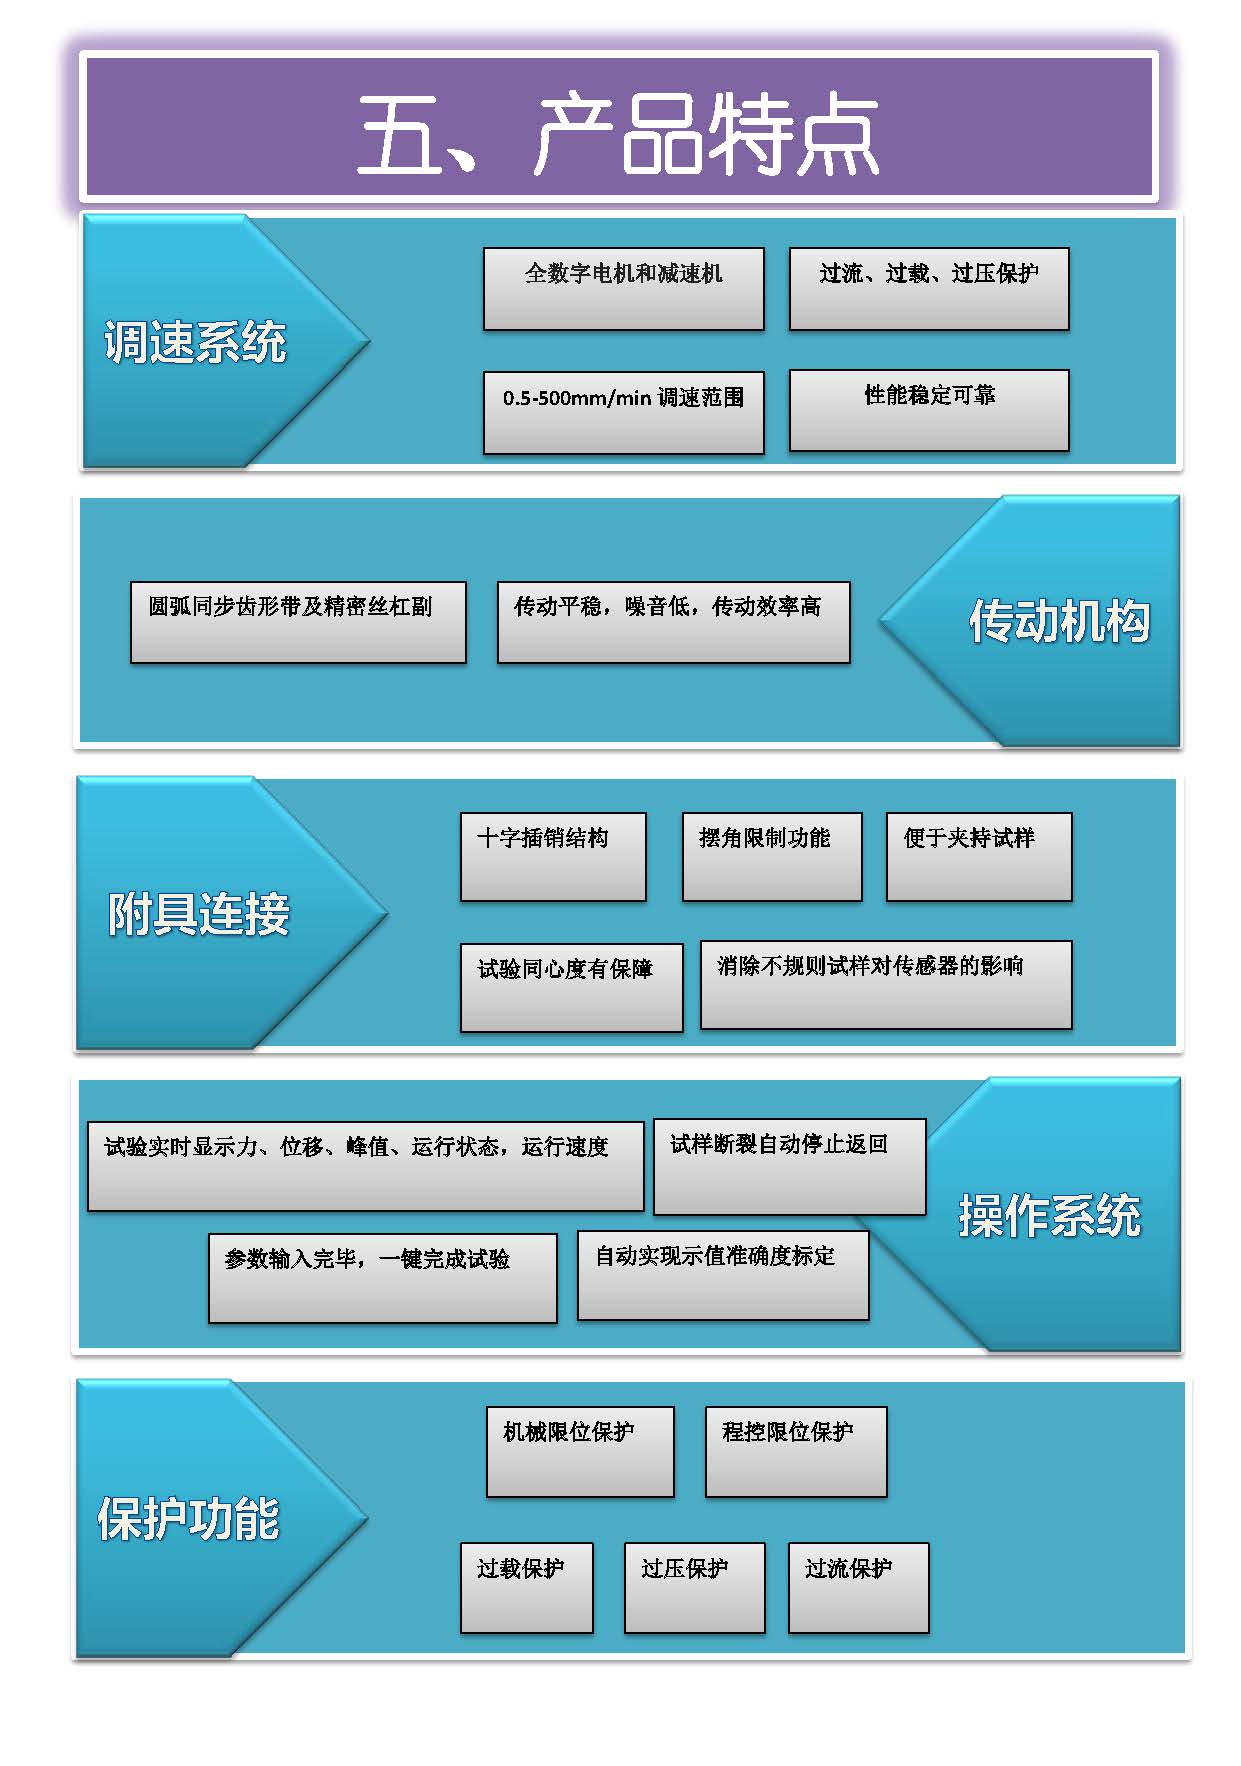 微机门式-国产配置 中文 所有型号_页面_06.jpg